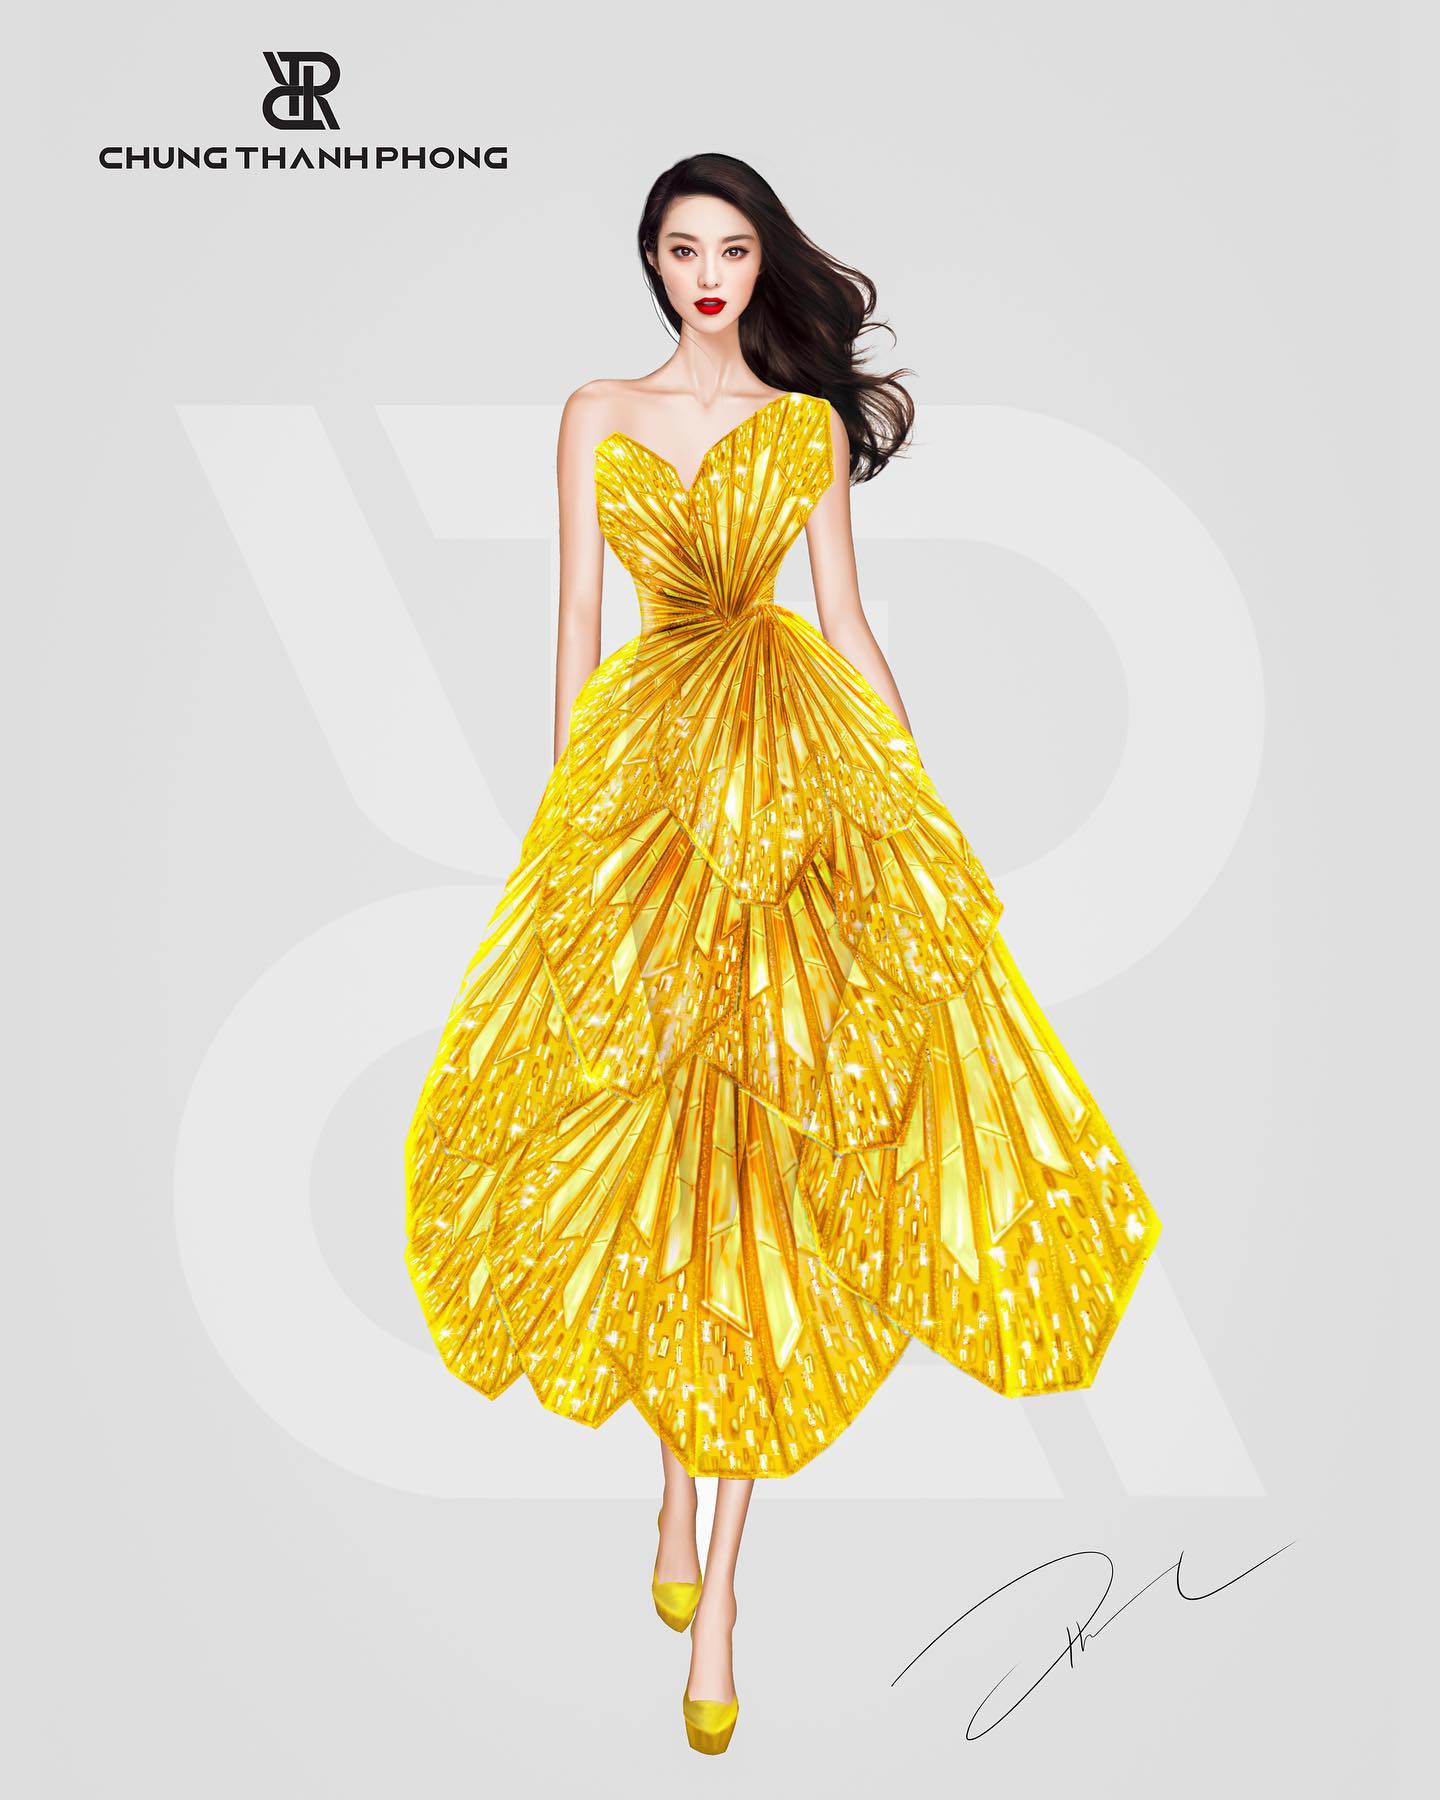 Thủy Tiên Phạm Băng Băng rạo rực với váy hoa 3D bay bổng  FATODA Blog